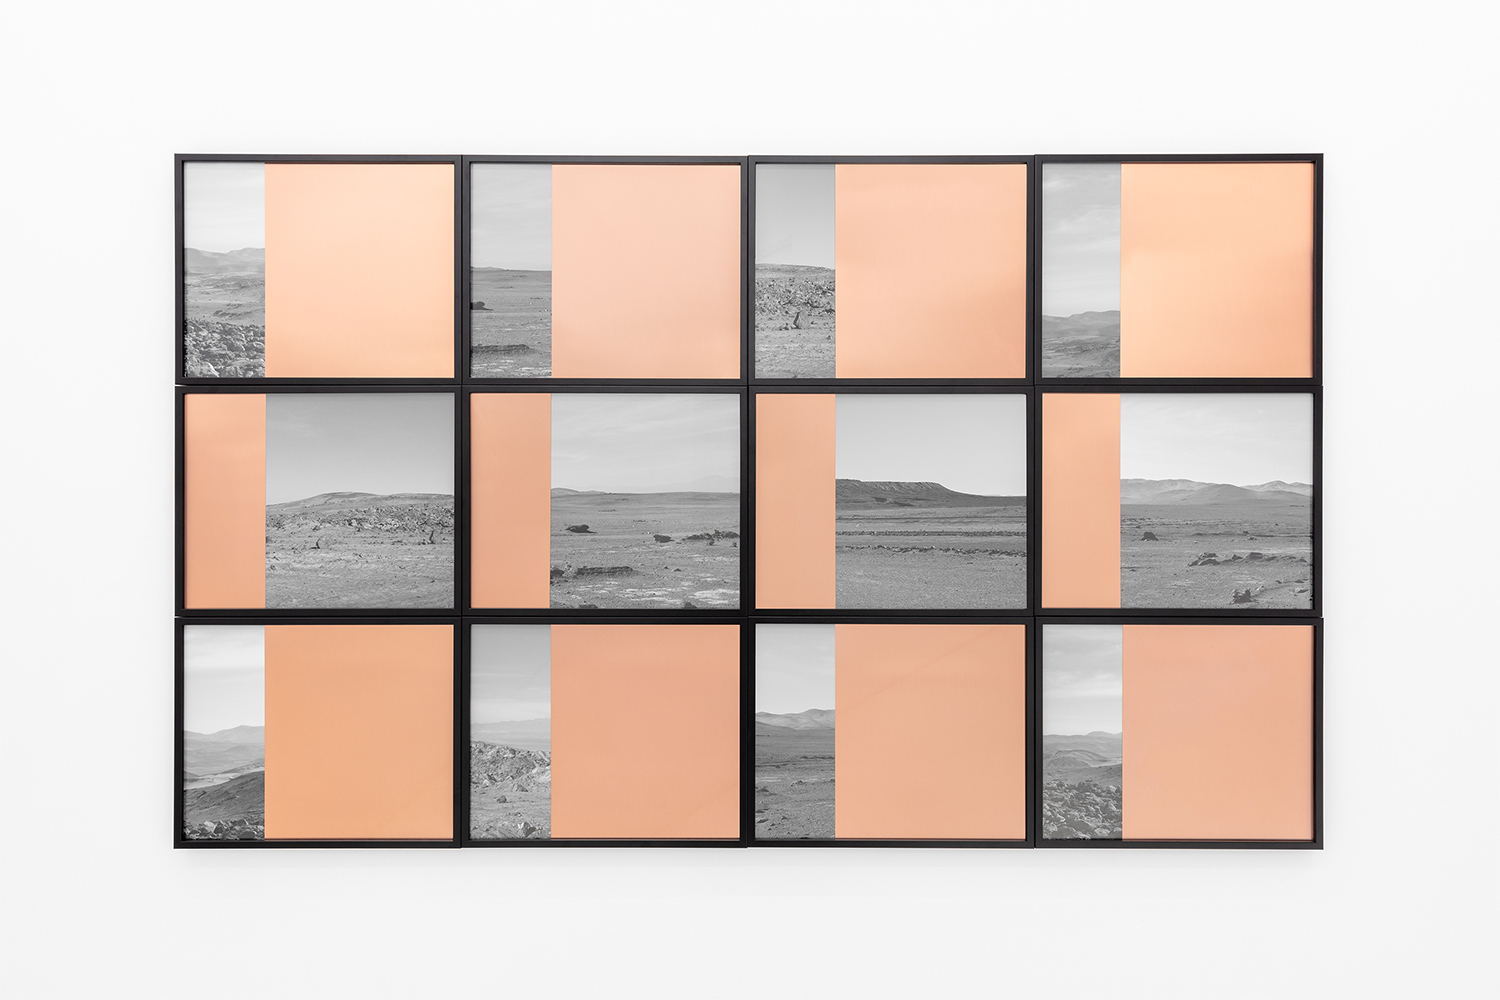 Atacama, patrick hamilton, galería casado santapau, arte madrid, foto collage